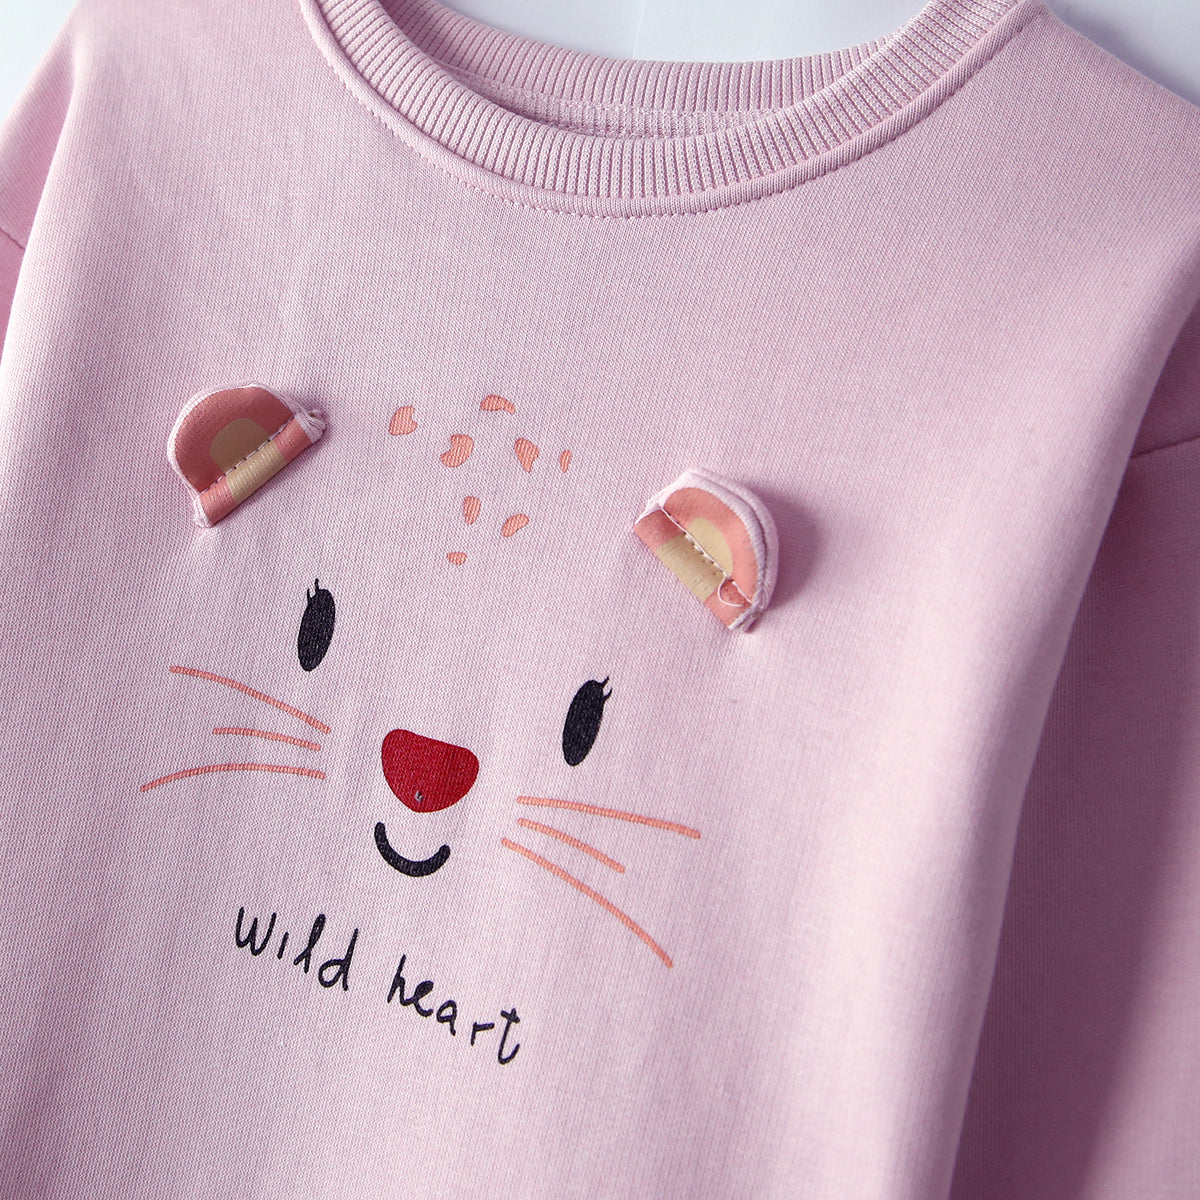 Premium Quality &quot;Cat&quot; Printed Sweatshirt For Girls